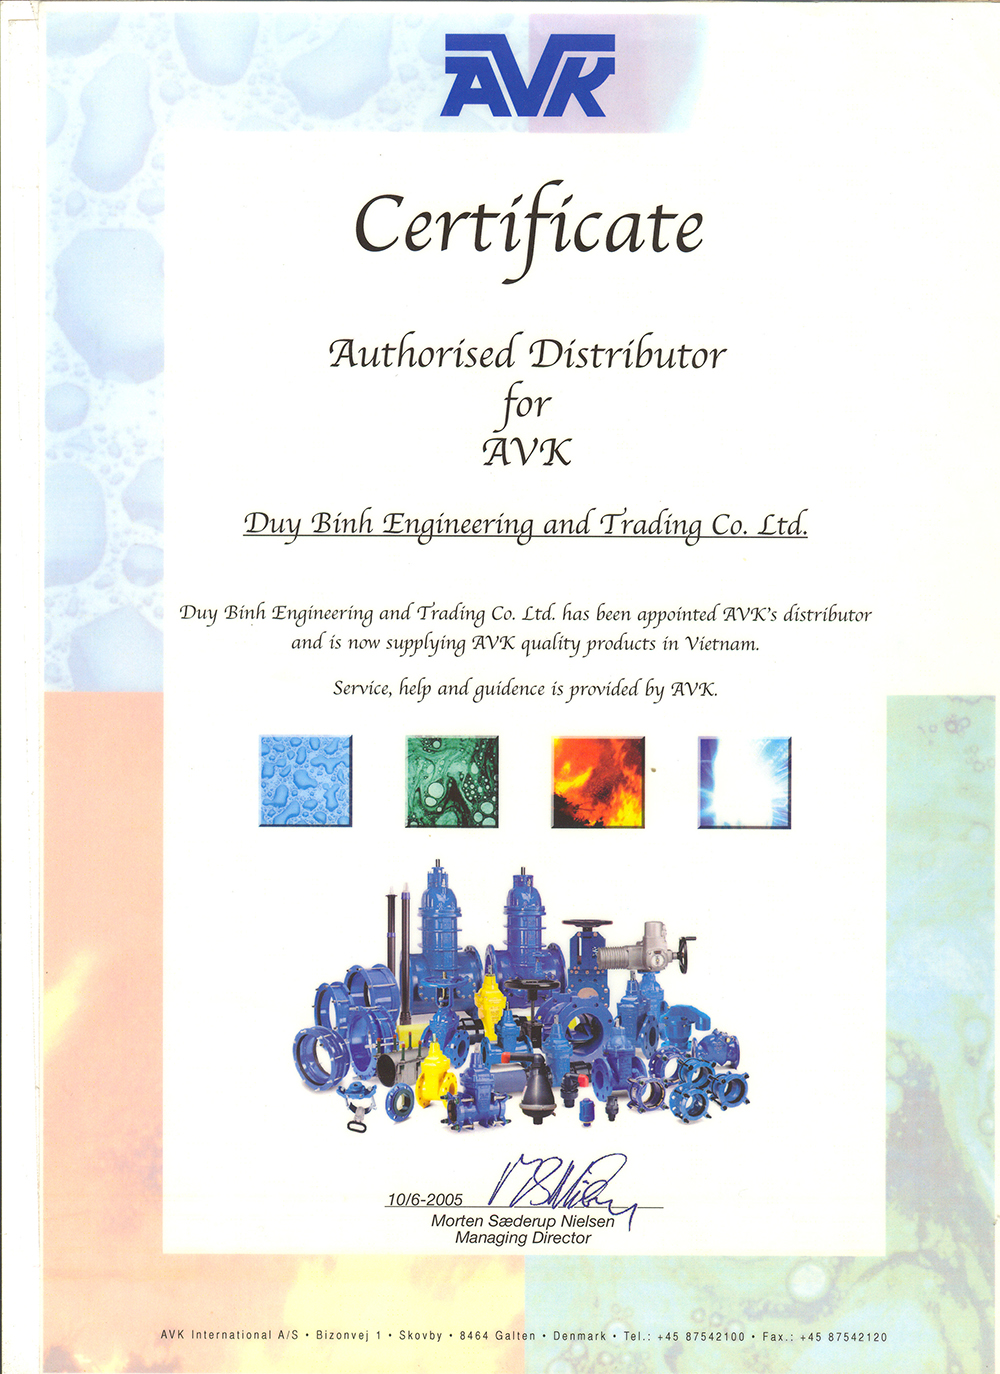 avk certificate.jpg